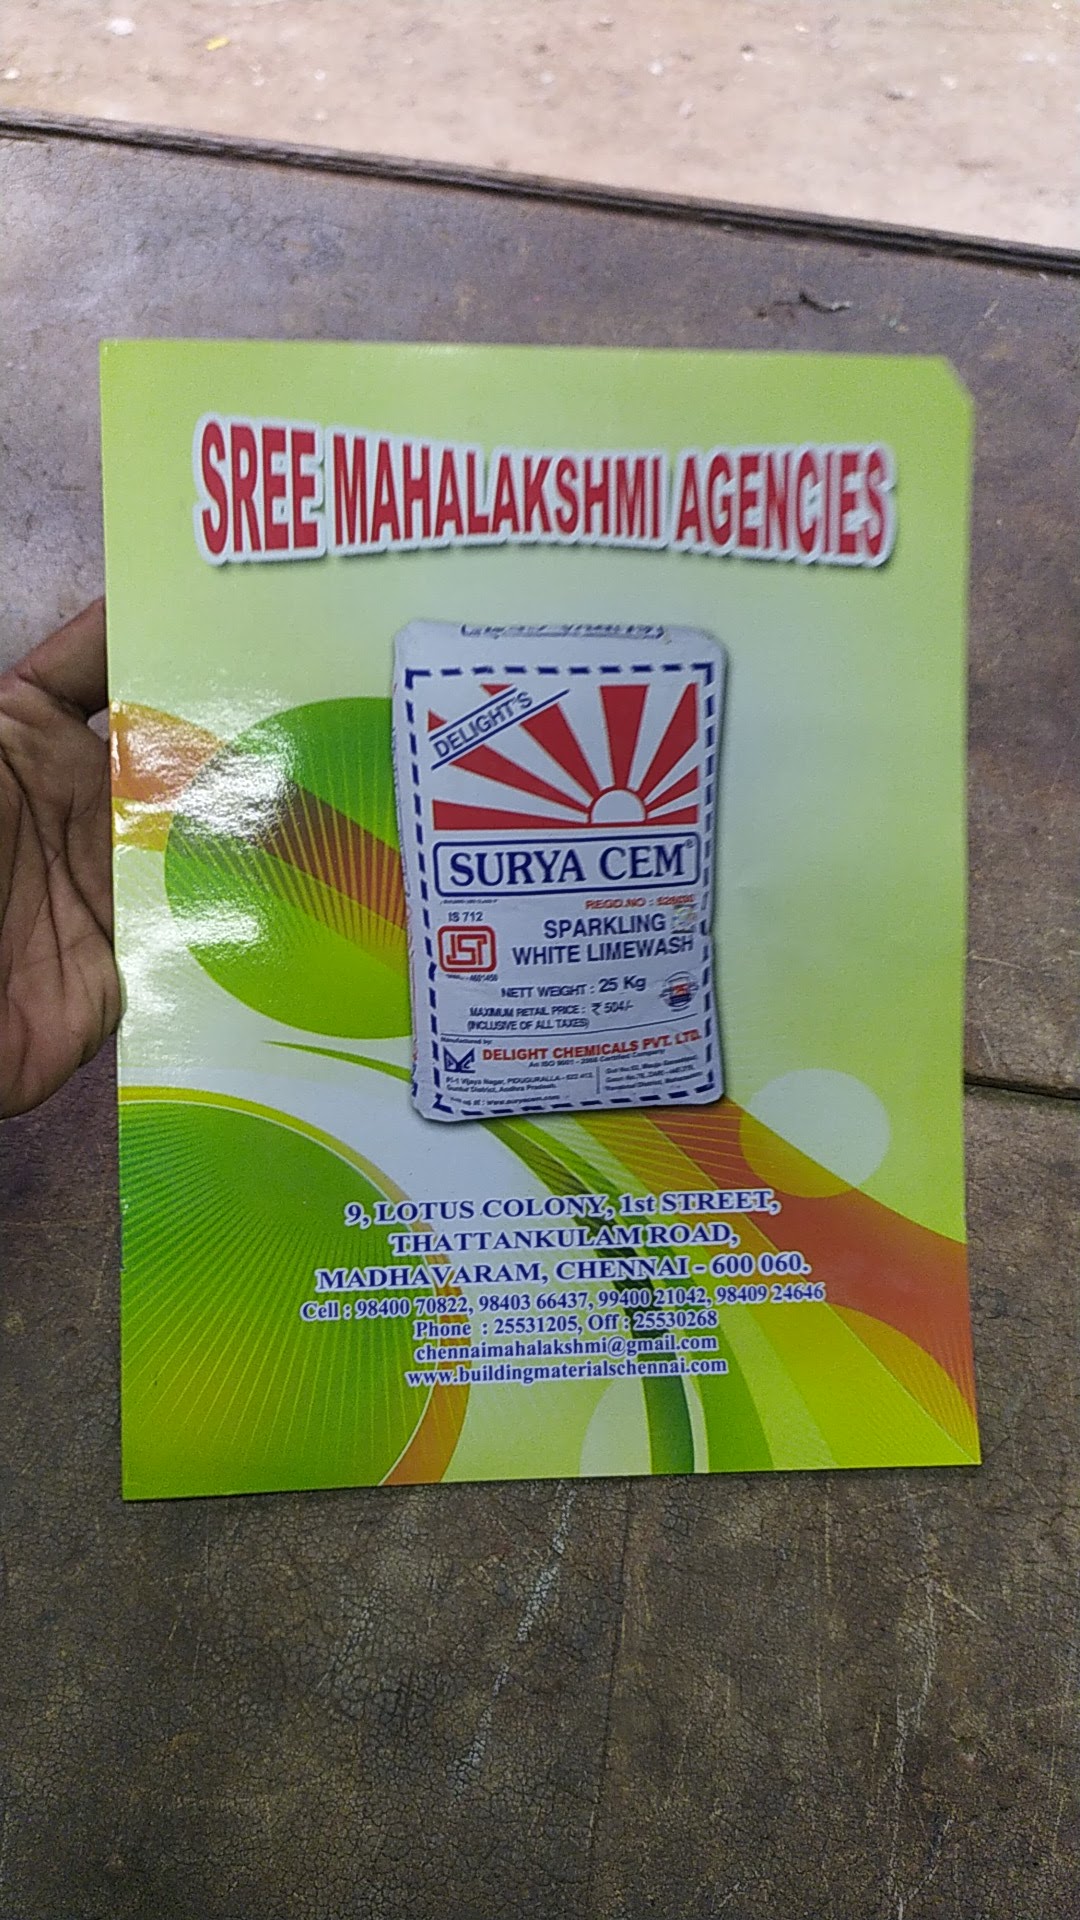 Sree Mahalakshmi Agencies